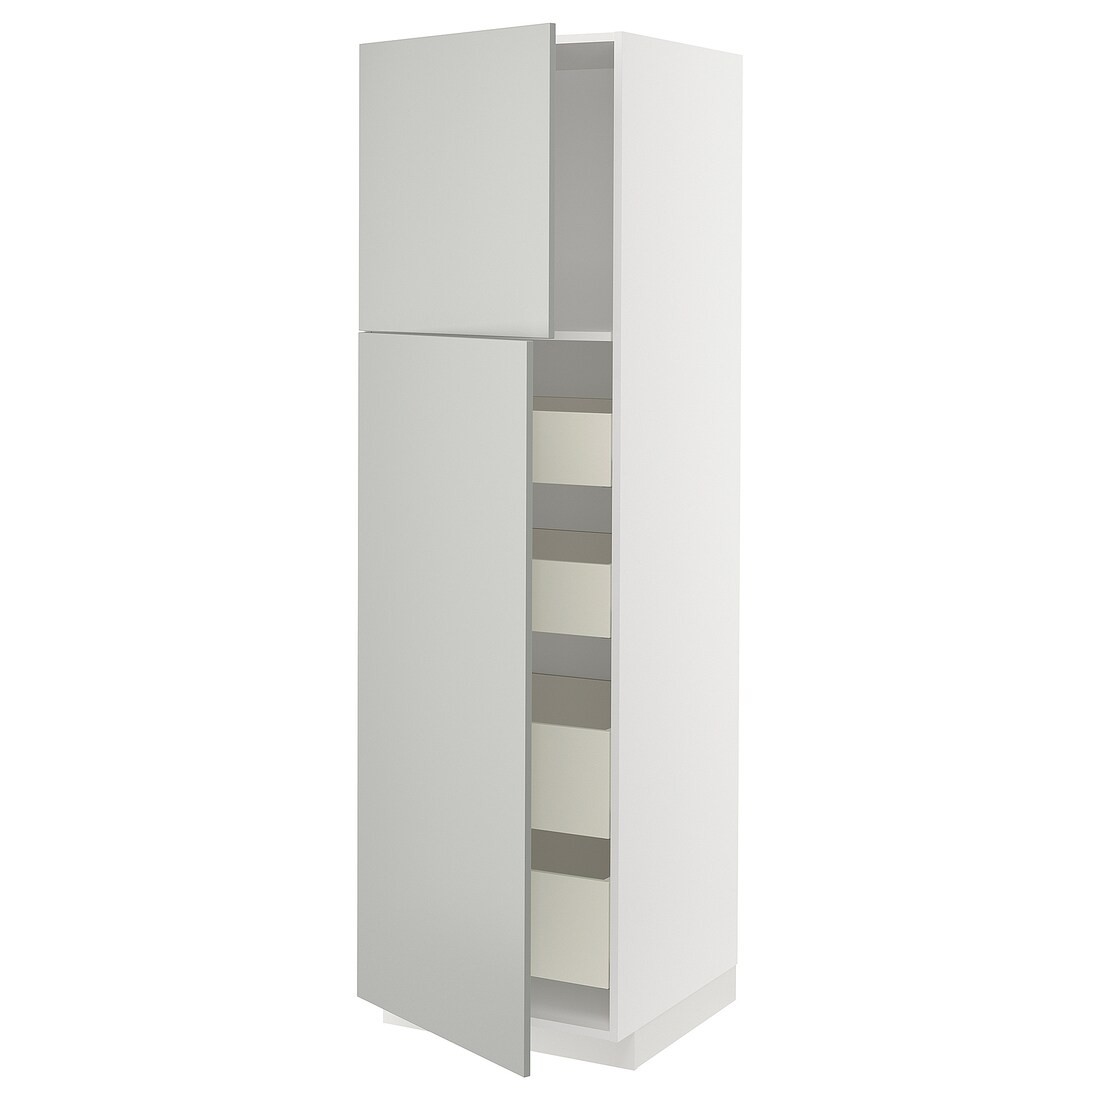 METOD / MAXIMERA Шкаф высокий 2 двери / 4 ящика, белый / Хавсторп светло-серый, 60x60x200 см